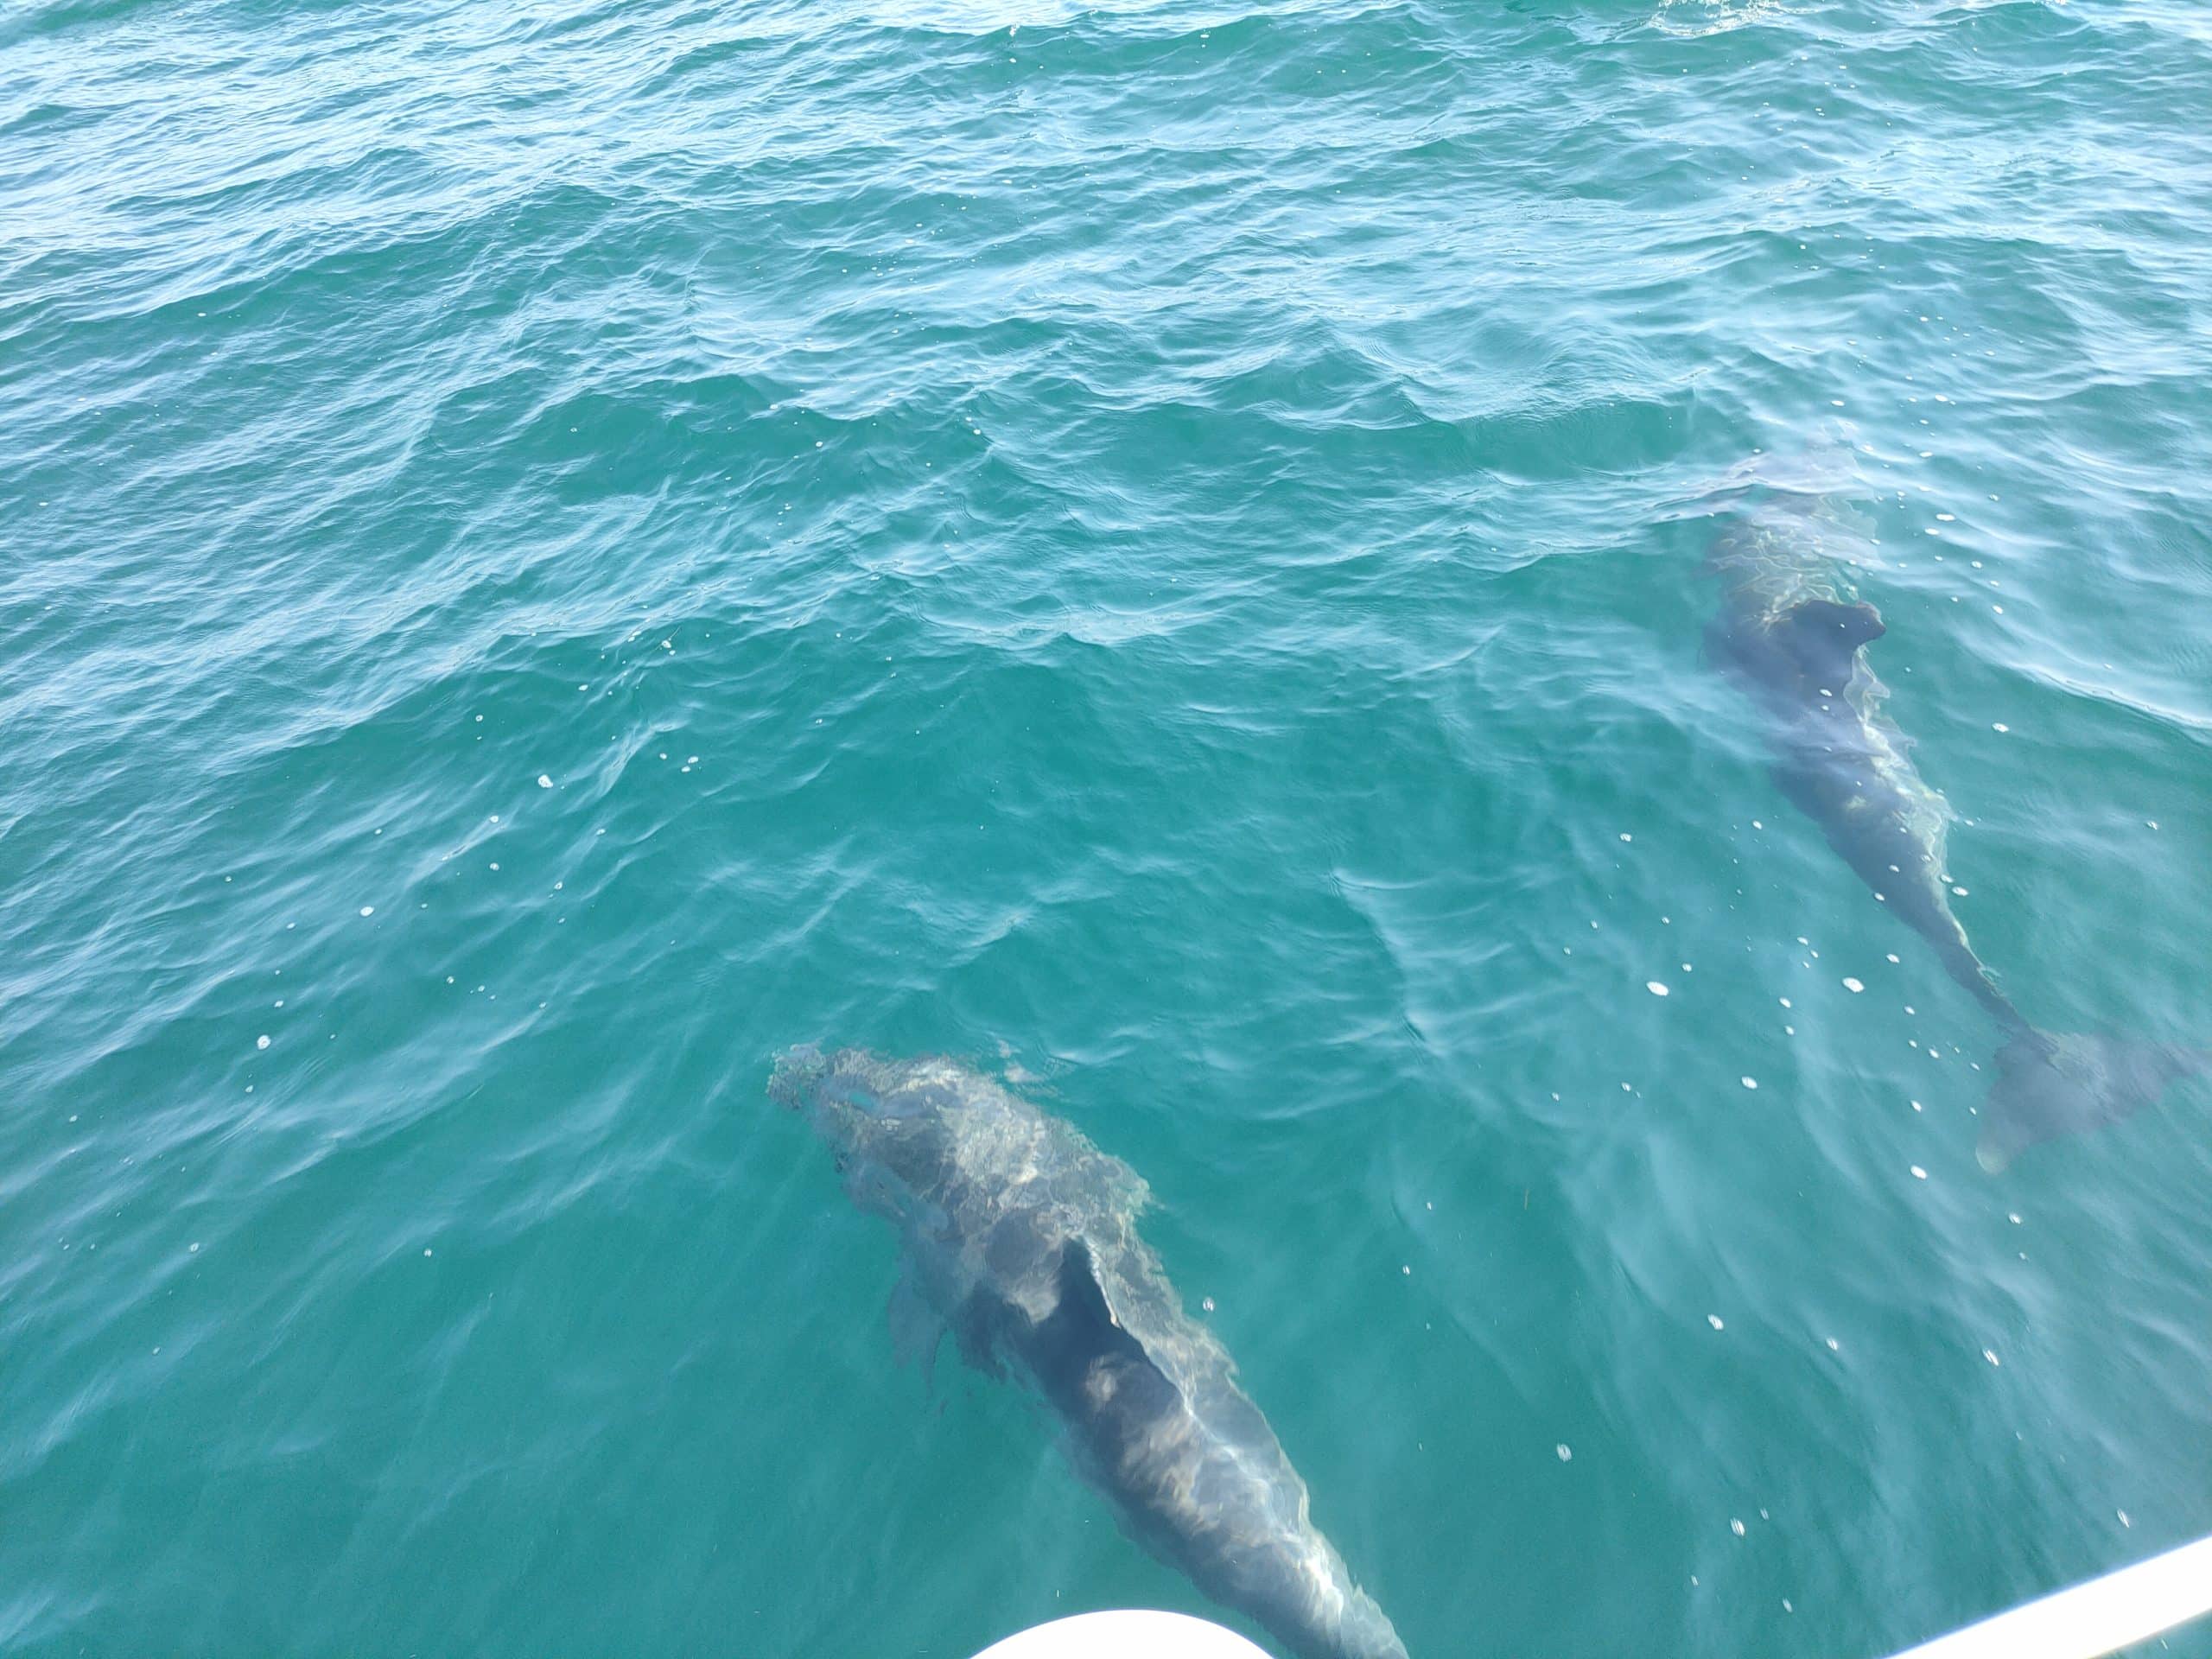 דולפינים שליוו את השייט שלנו בים השחור (צילום: צילום מקור)